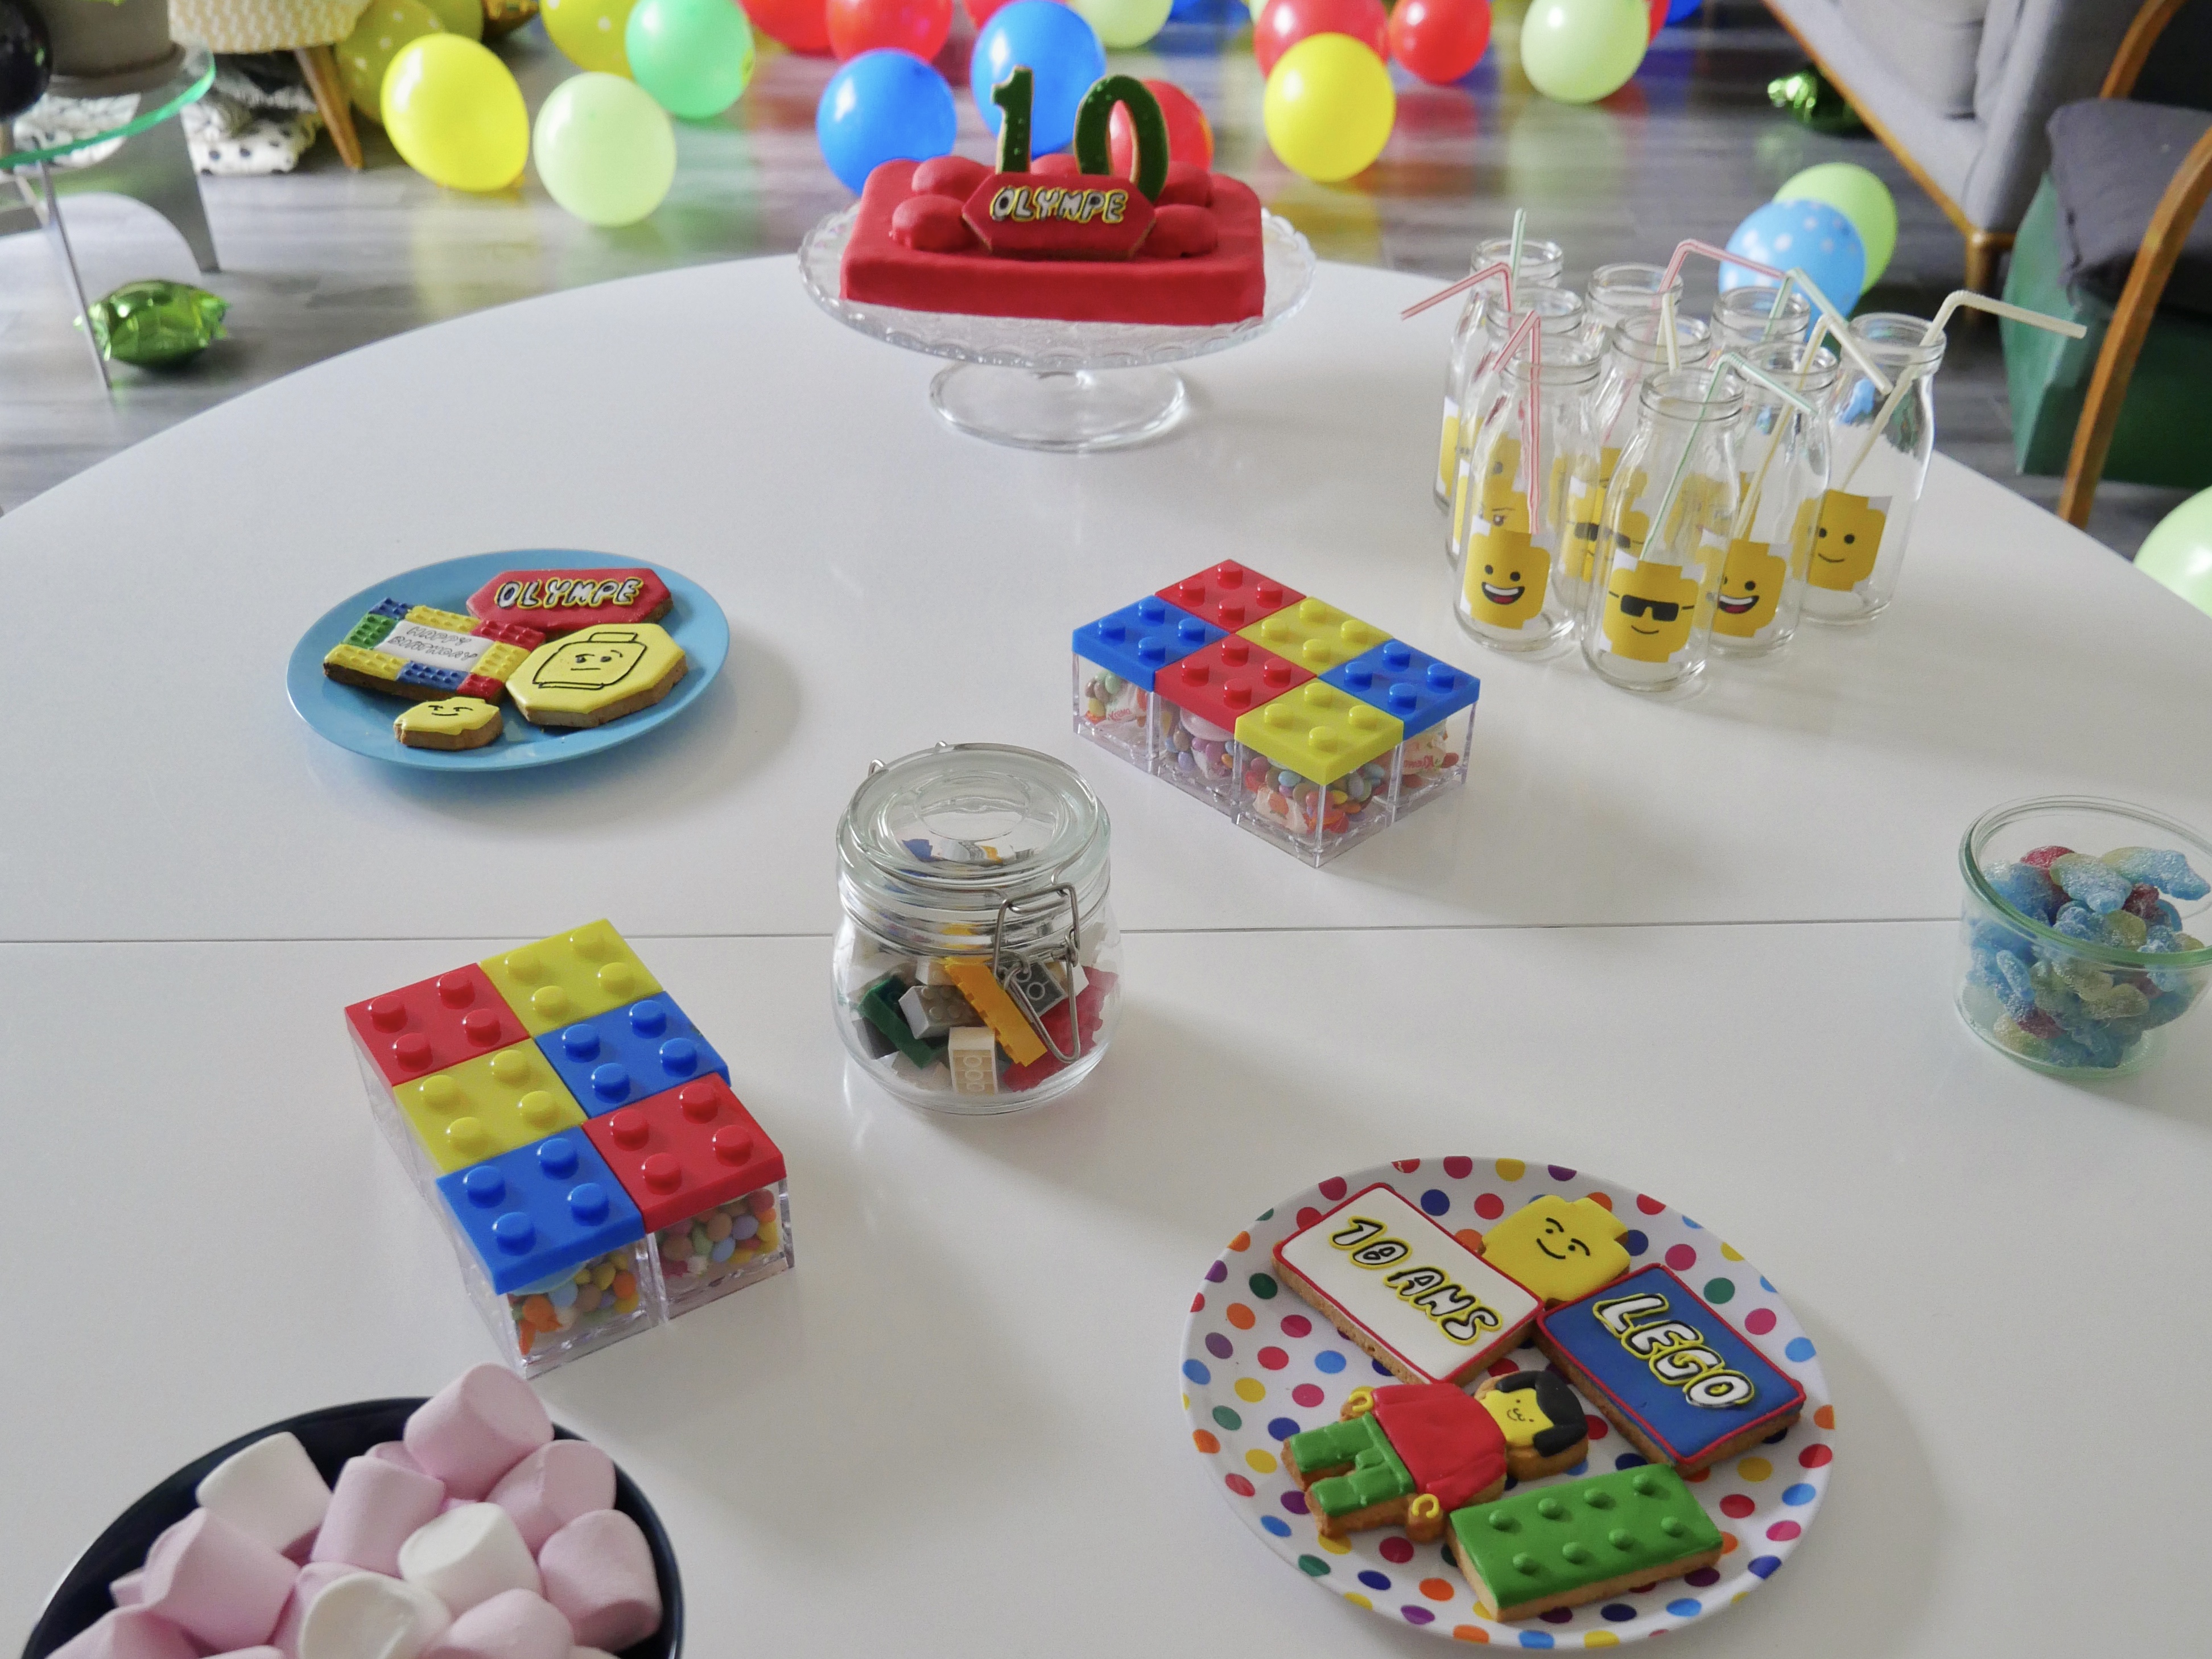 Décoration anniversaire lego - Lego